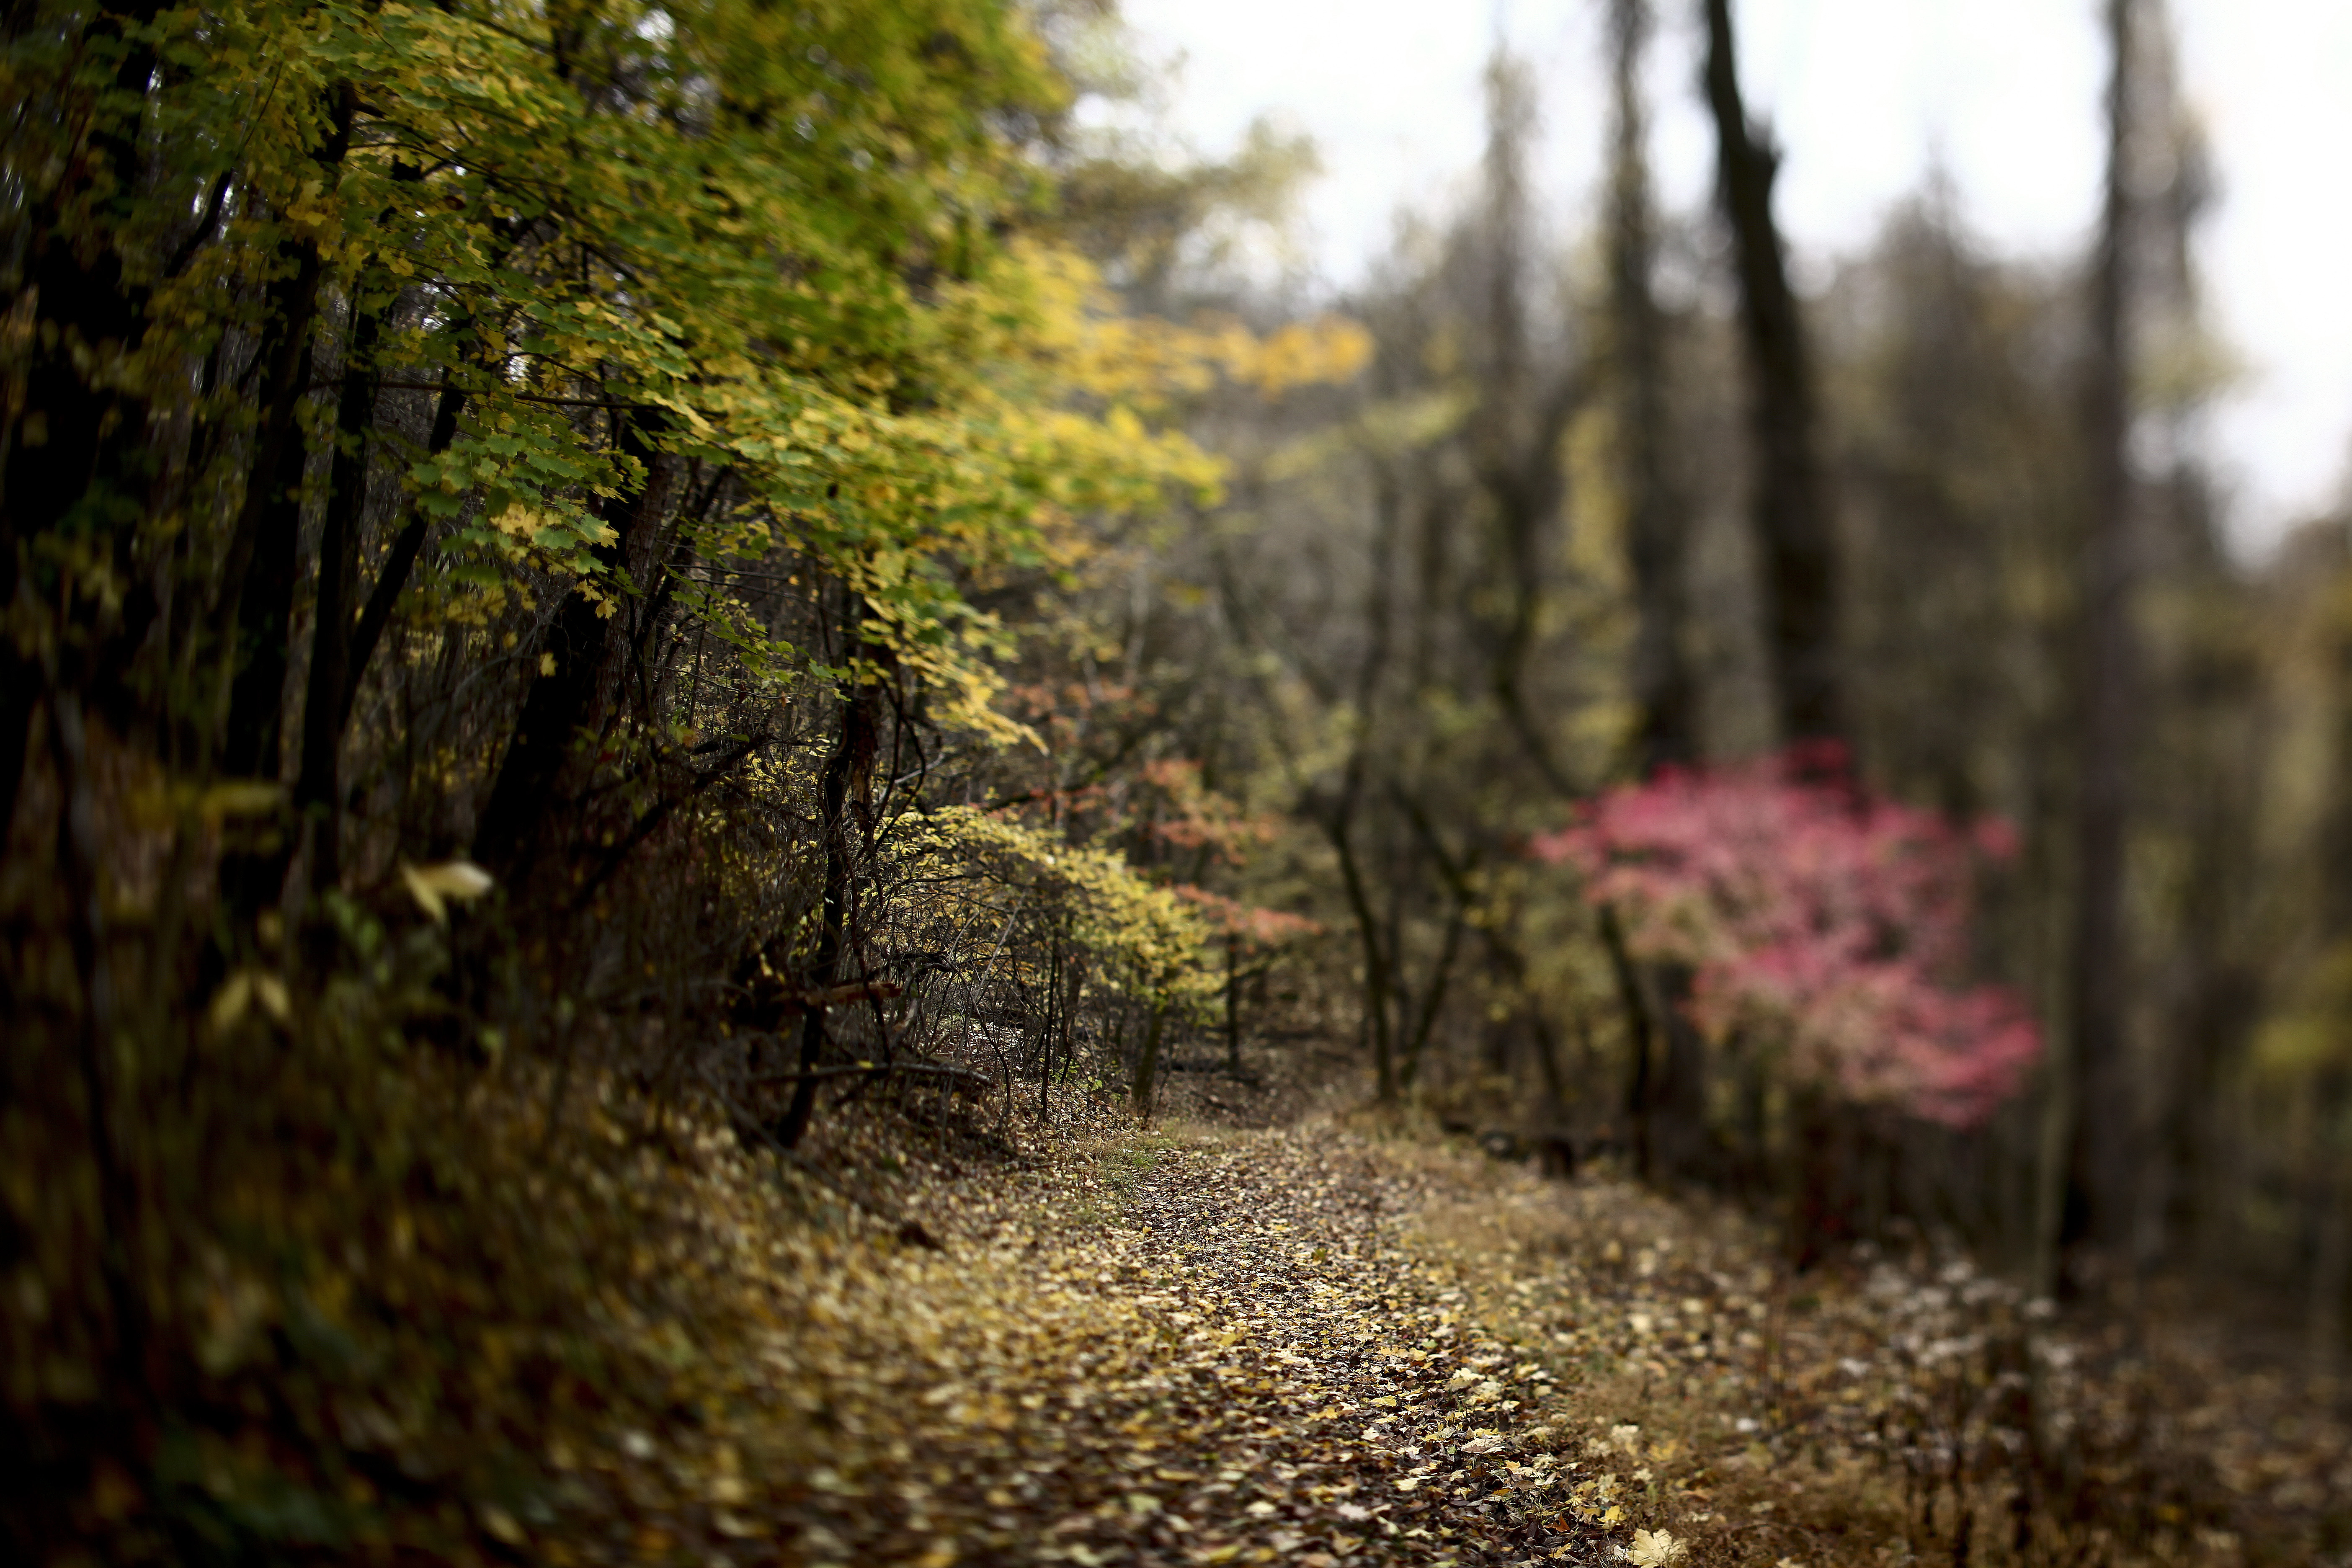 Картинка: Лес, деревья, листья, осень, тропа, дорожка, размытость